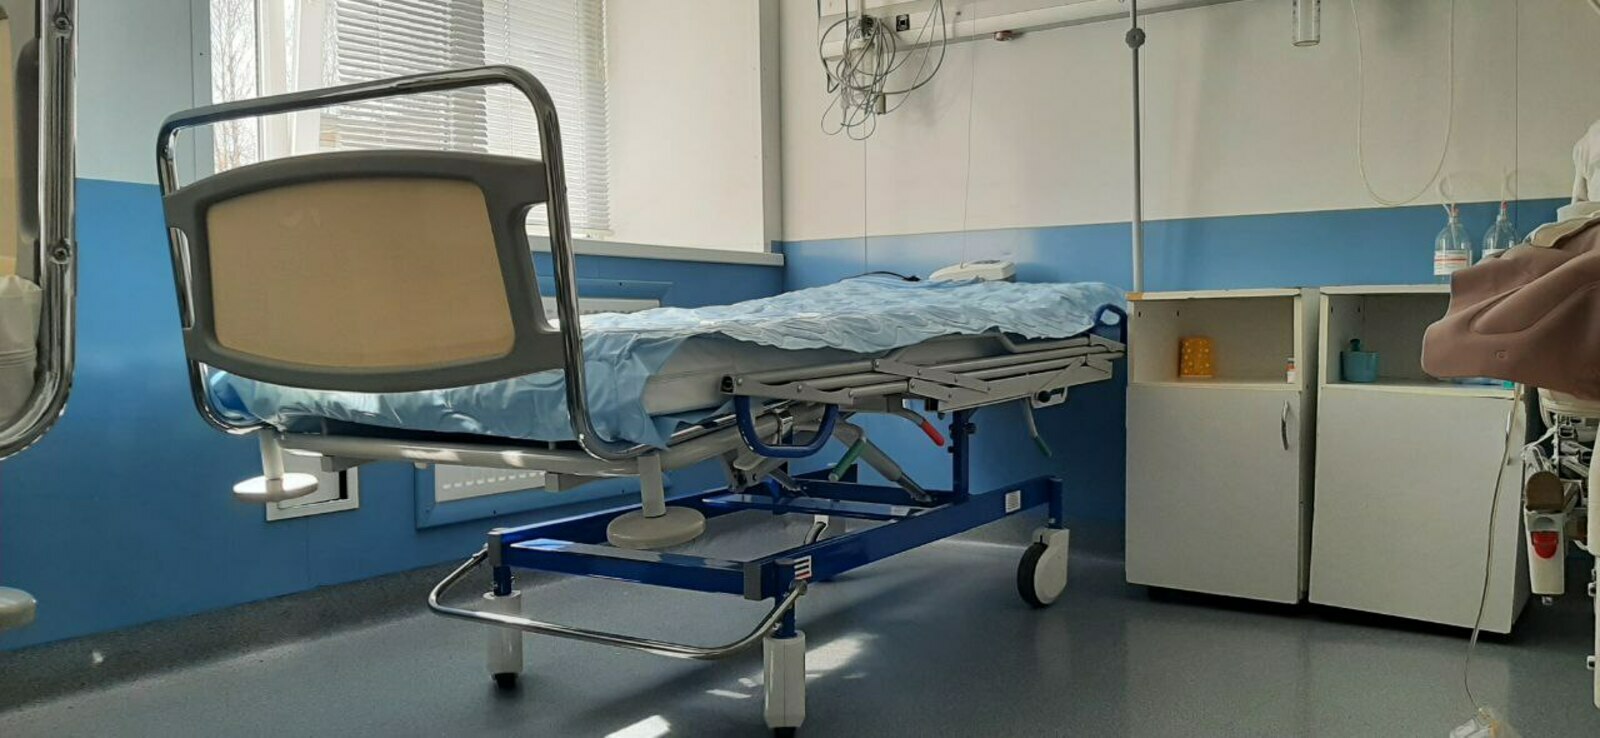 Нацпроект «Здравоохранение» в Башкирии: больница Стерлитамака получила противопролежневые матрасы